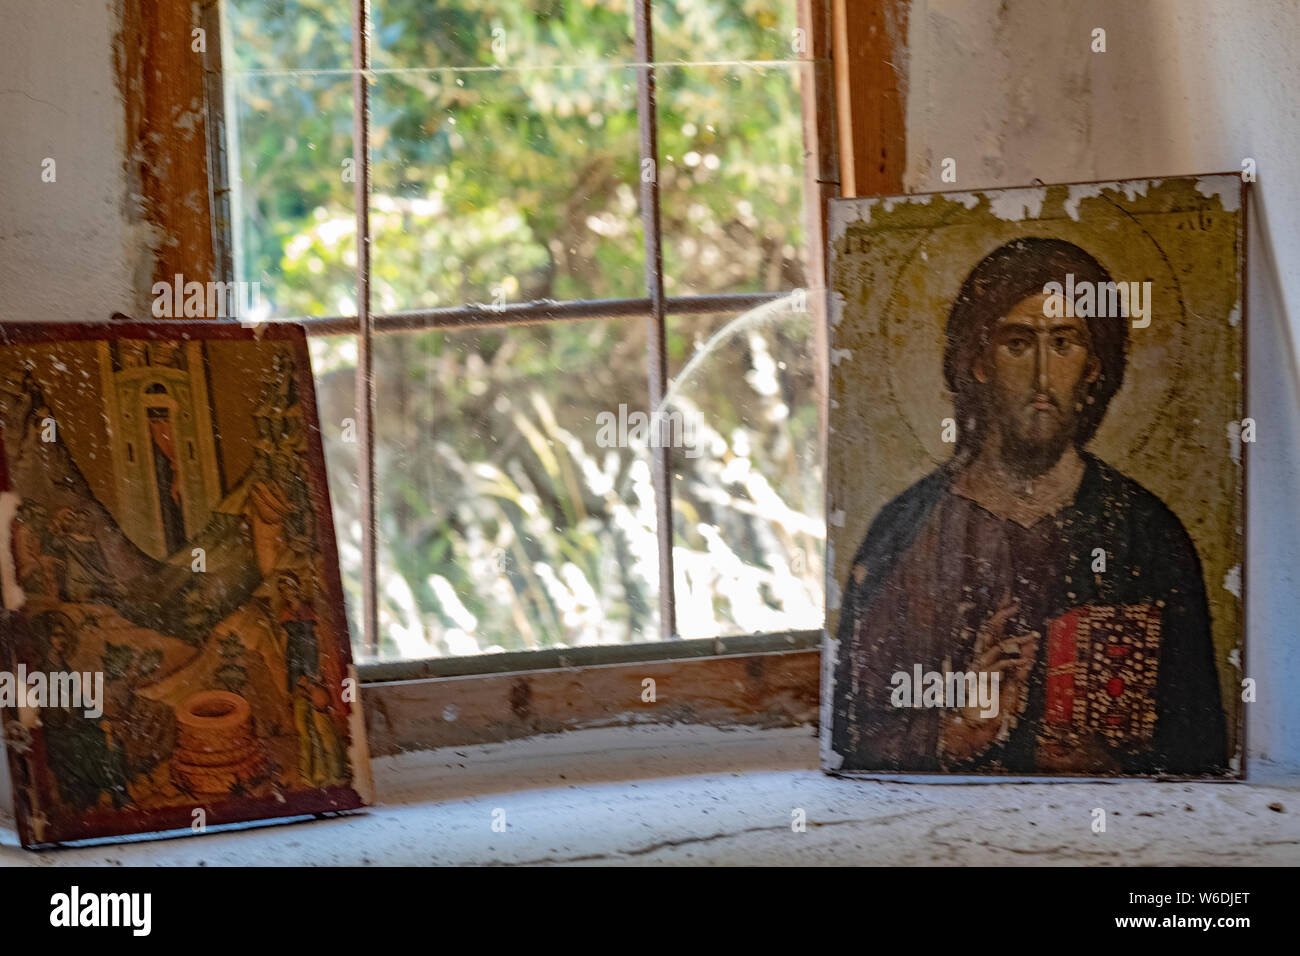 Deux icônes orthodoxes grecques illustrant des scènes religieuses sont placés dans une fenêtre encastrée dans une chapelle sur l'île de Lesbos, Grèce. Banque D'Images